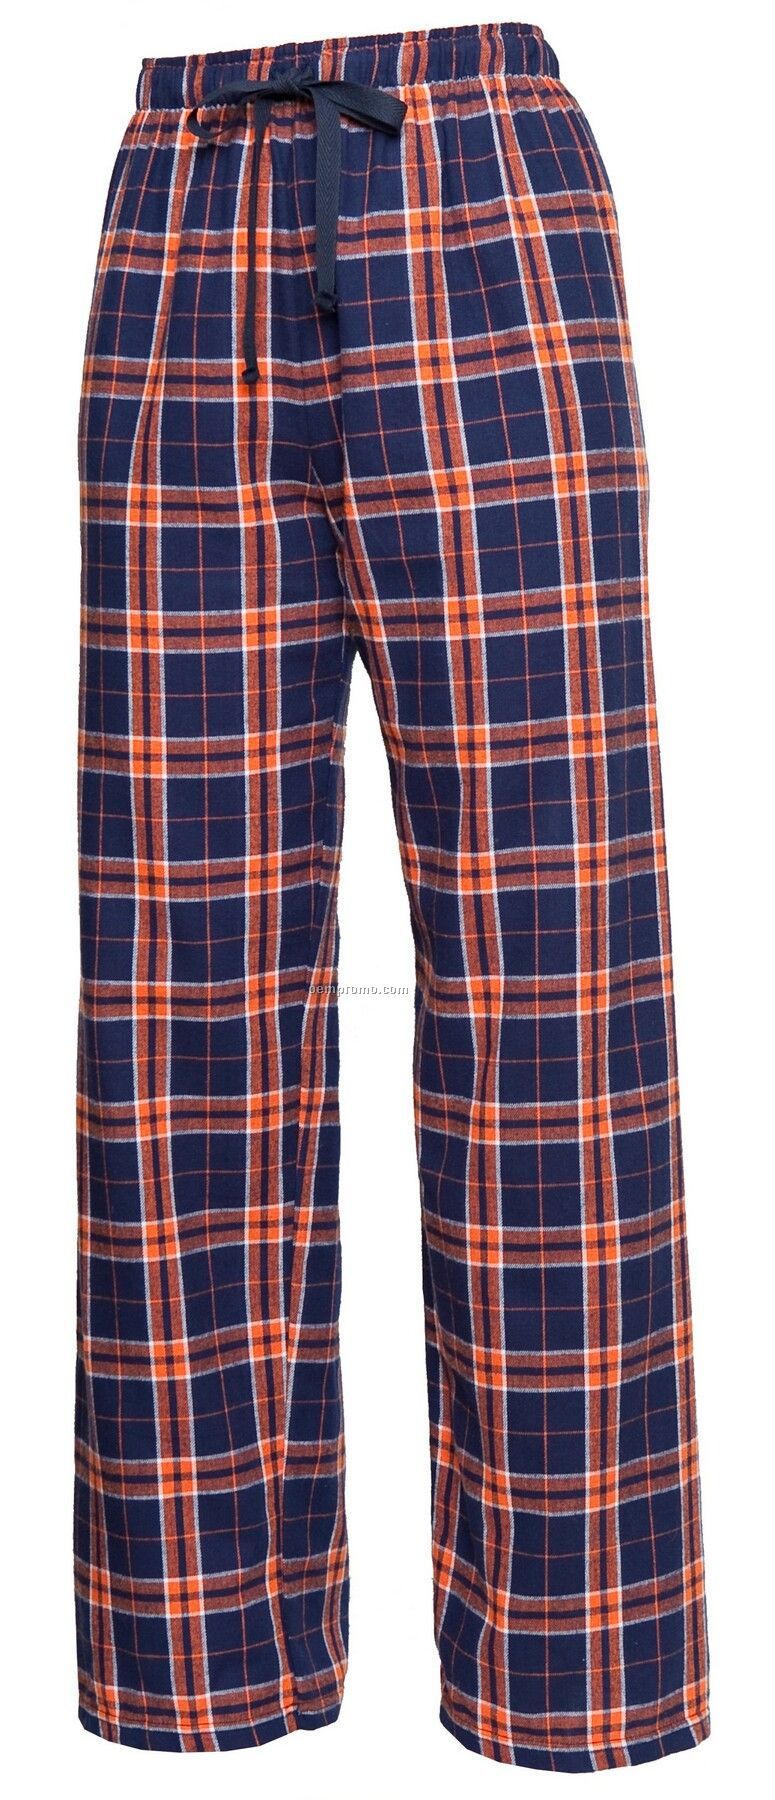 Adult Team Pride Flannel Pant In Orange & Navy Blue Plaid